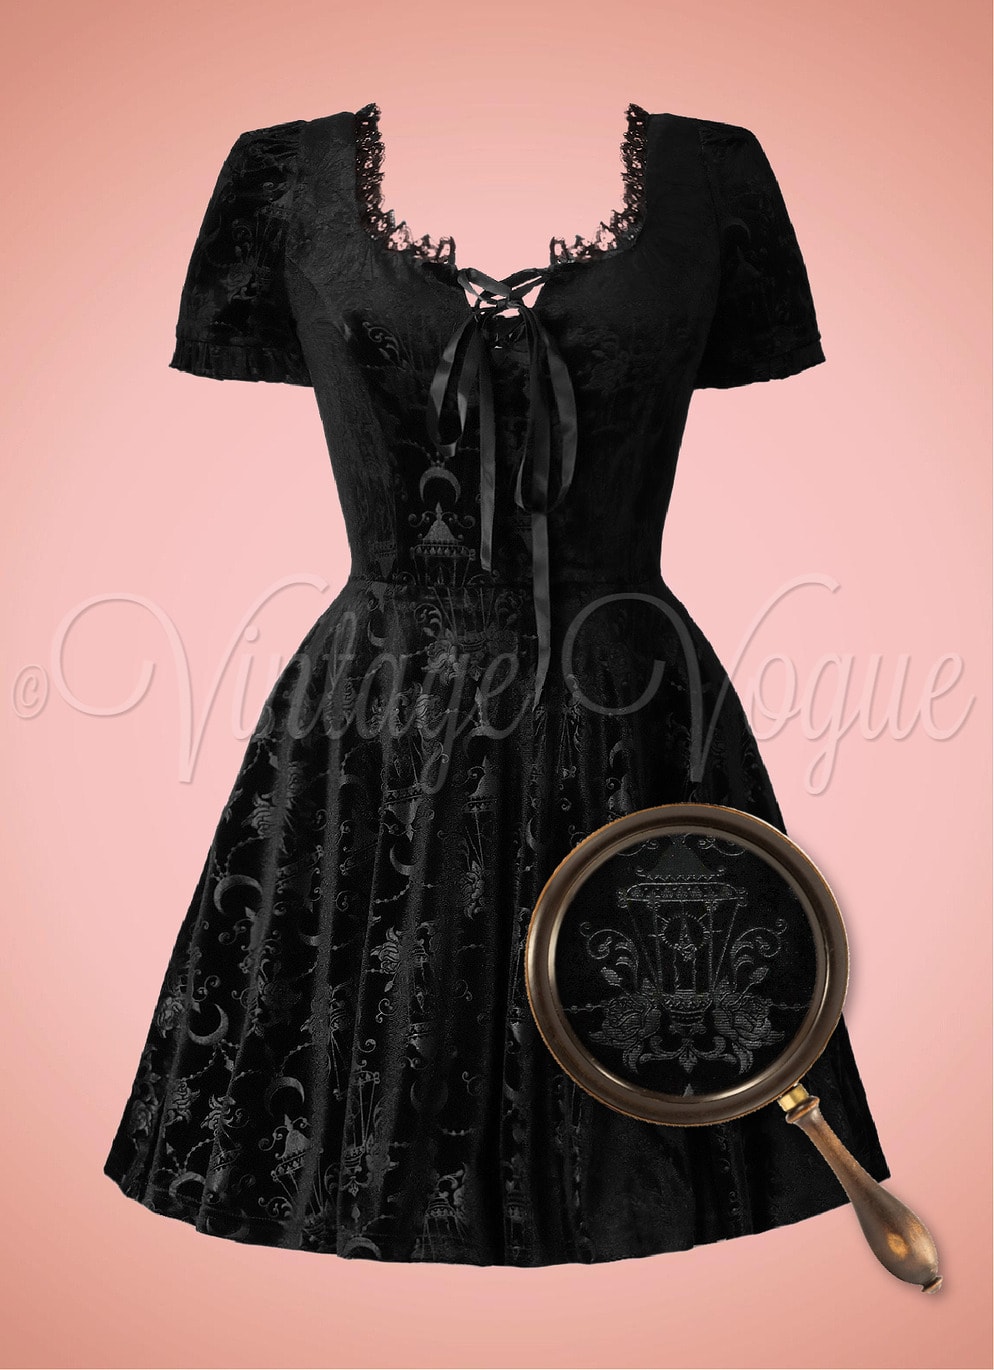 Banned Retro Vintage Gothic Samt Mini Kleid Chandelier Dress in Schwarz Goth Gothic